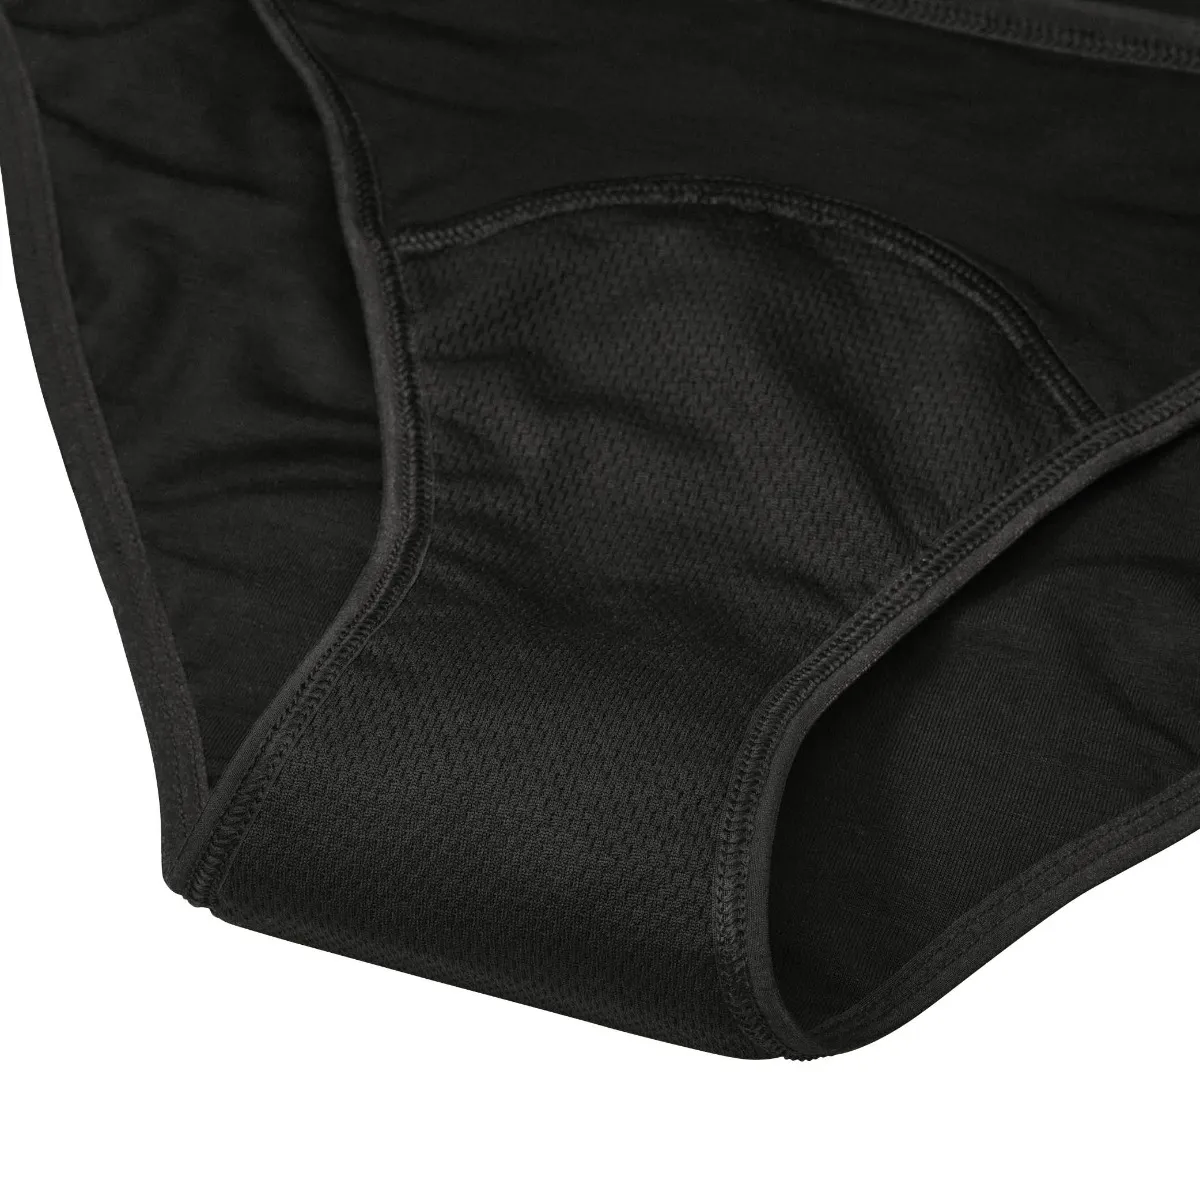 AllMatters Menstruační kalhotky s vysokým pasem vel. L 1 ks černé